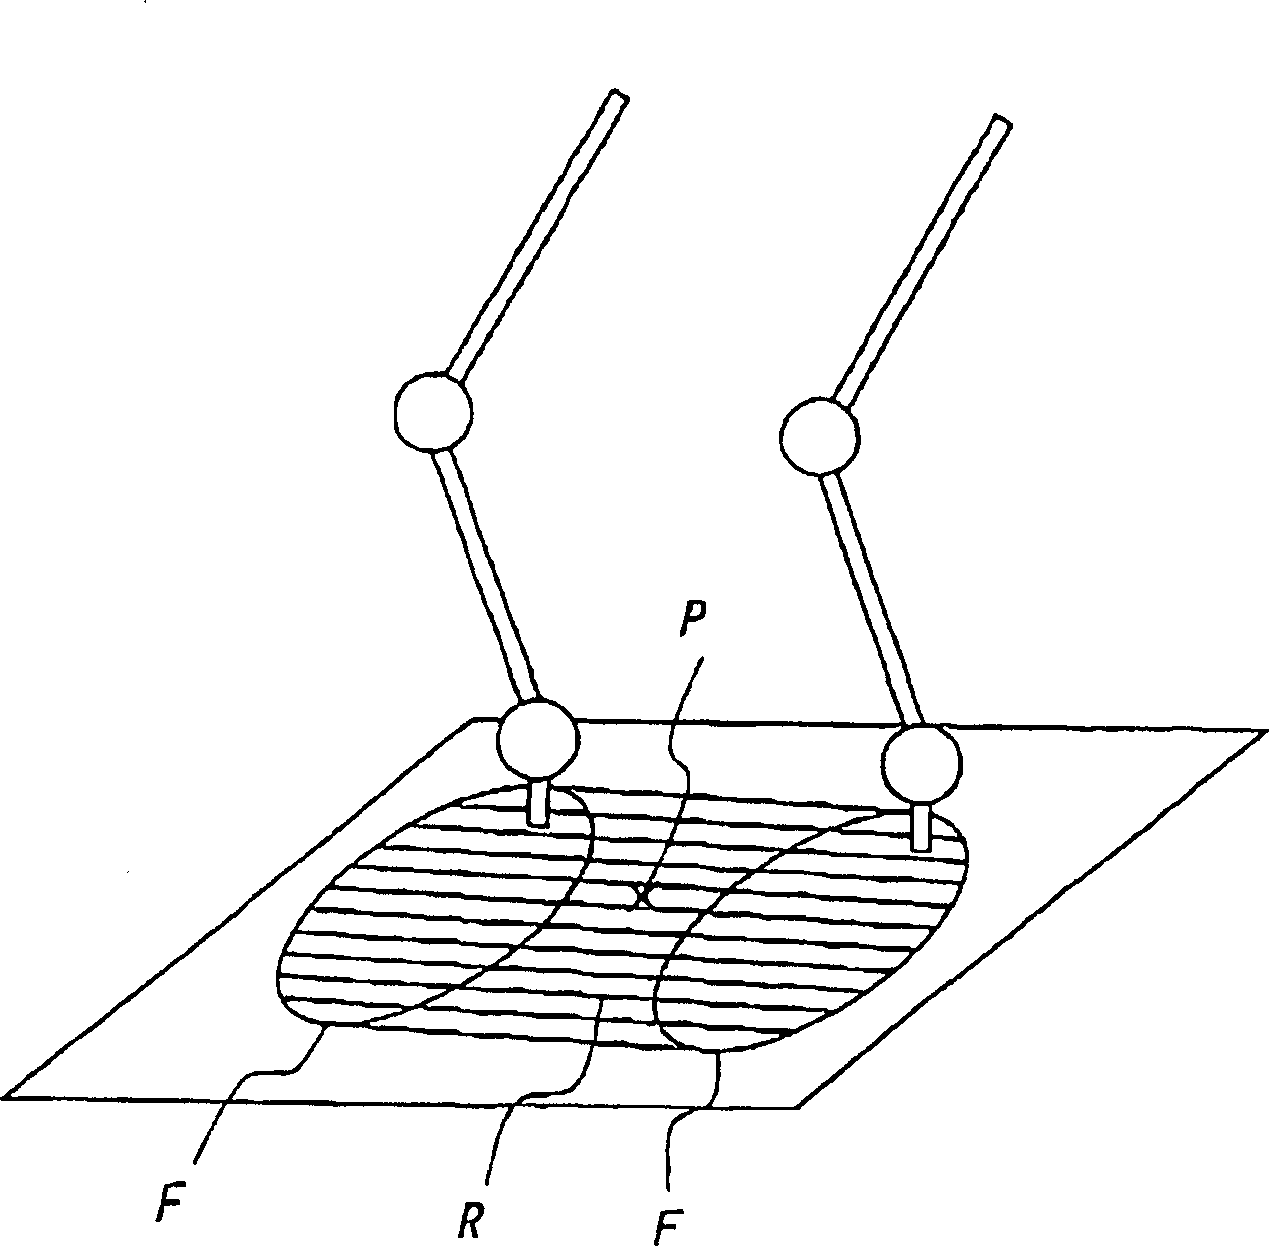 Motion generating method for man-shape link system